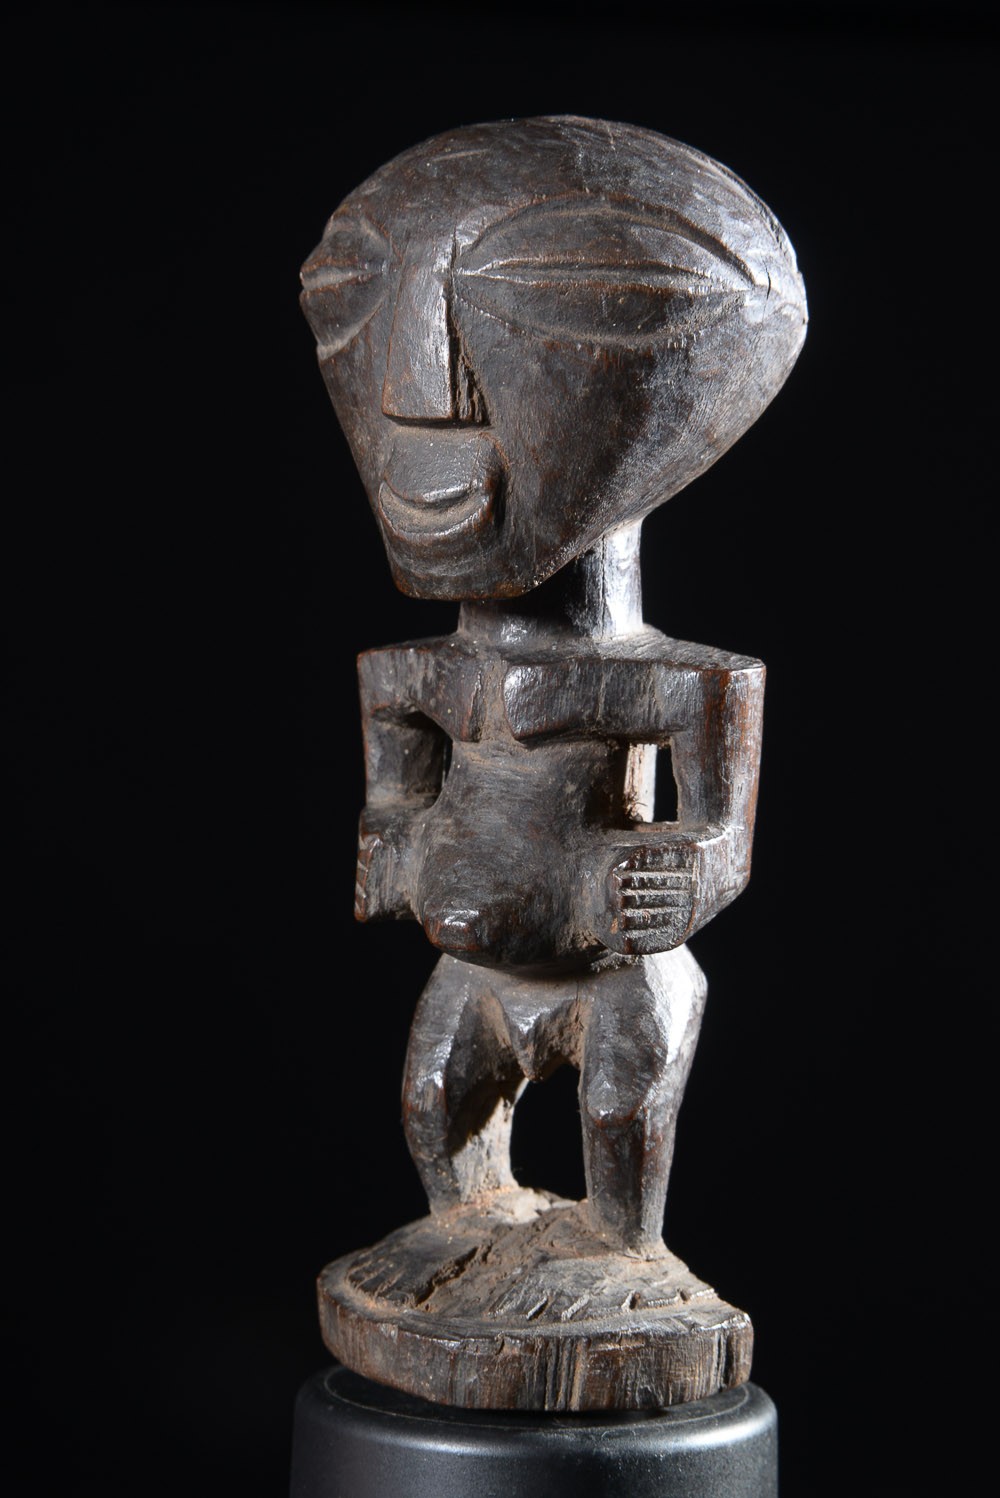 Fetiche Nkishi amulette - Songye - RDC Zaire - Fetiches africains